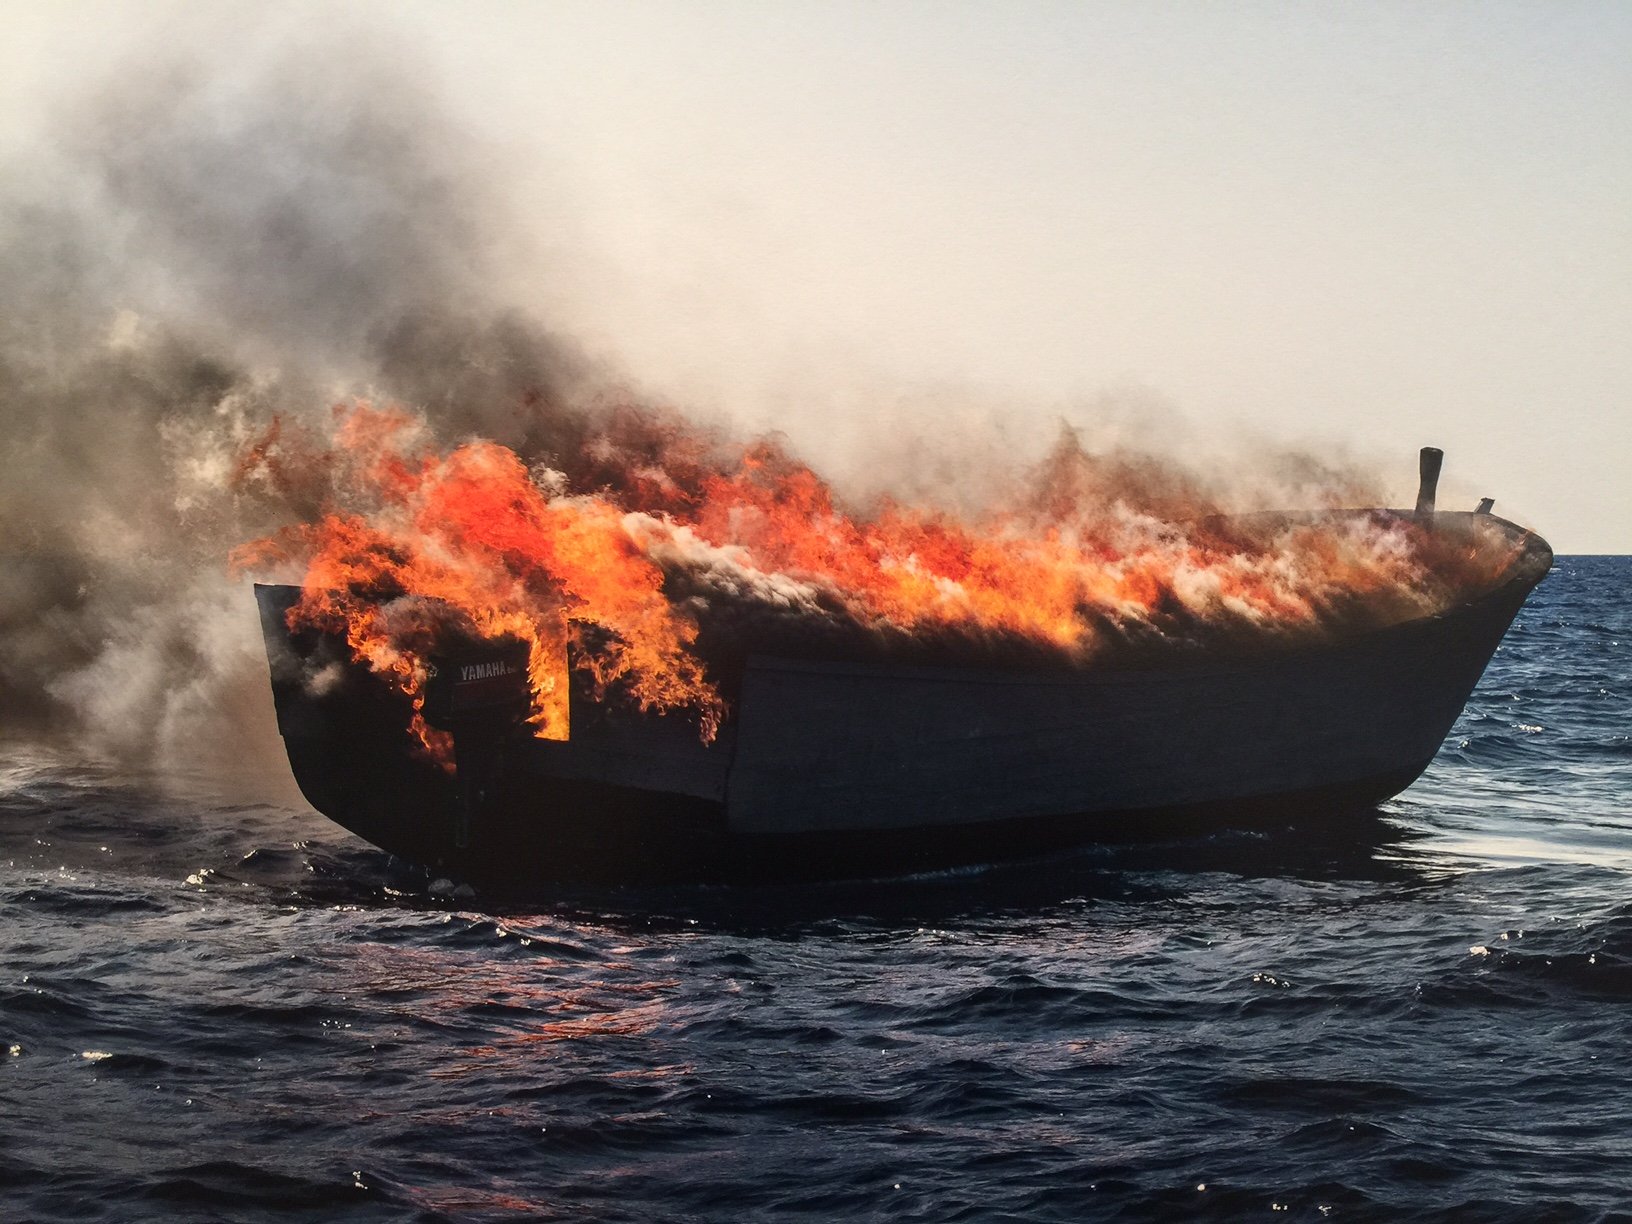 Bruno Fert, Barque en flames. Mer Méditerranée, juillet 2017, dettaglio